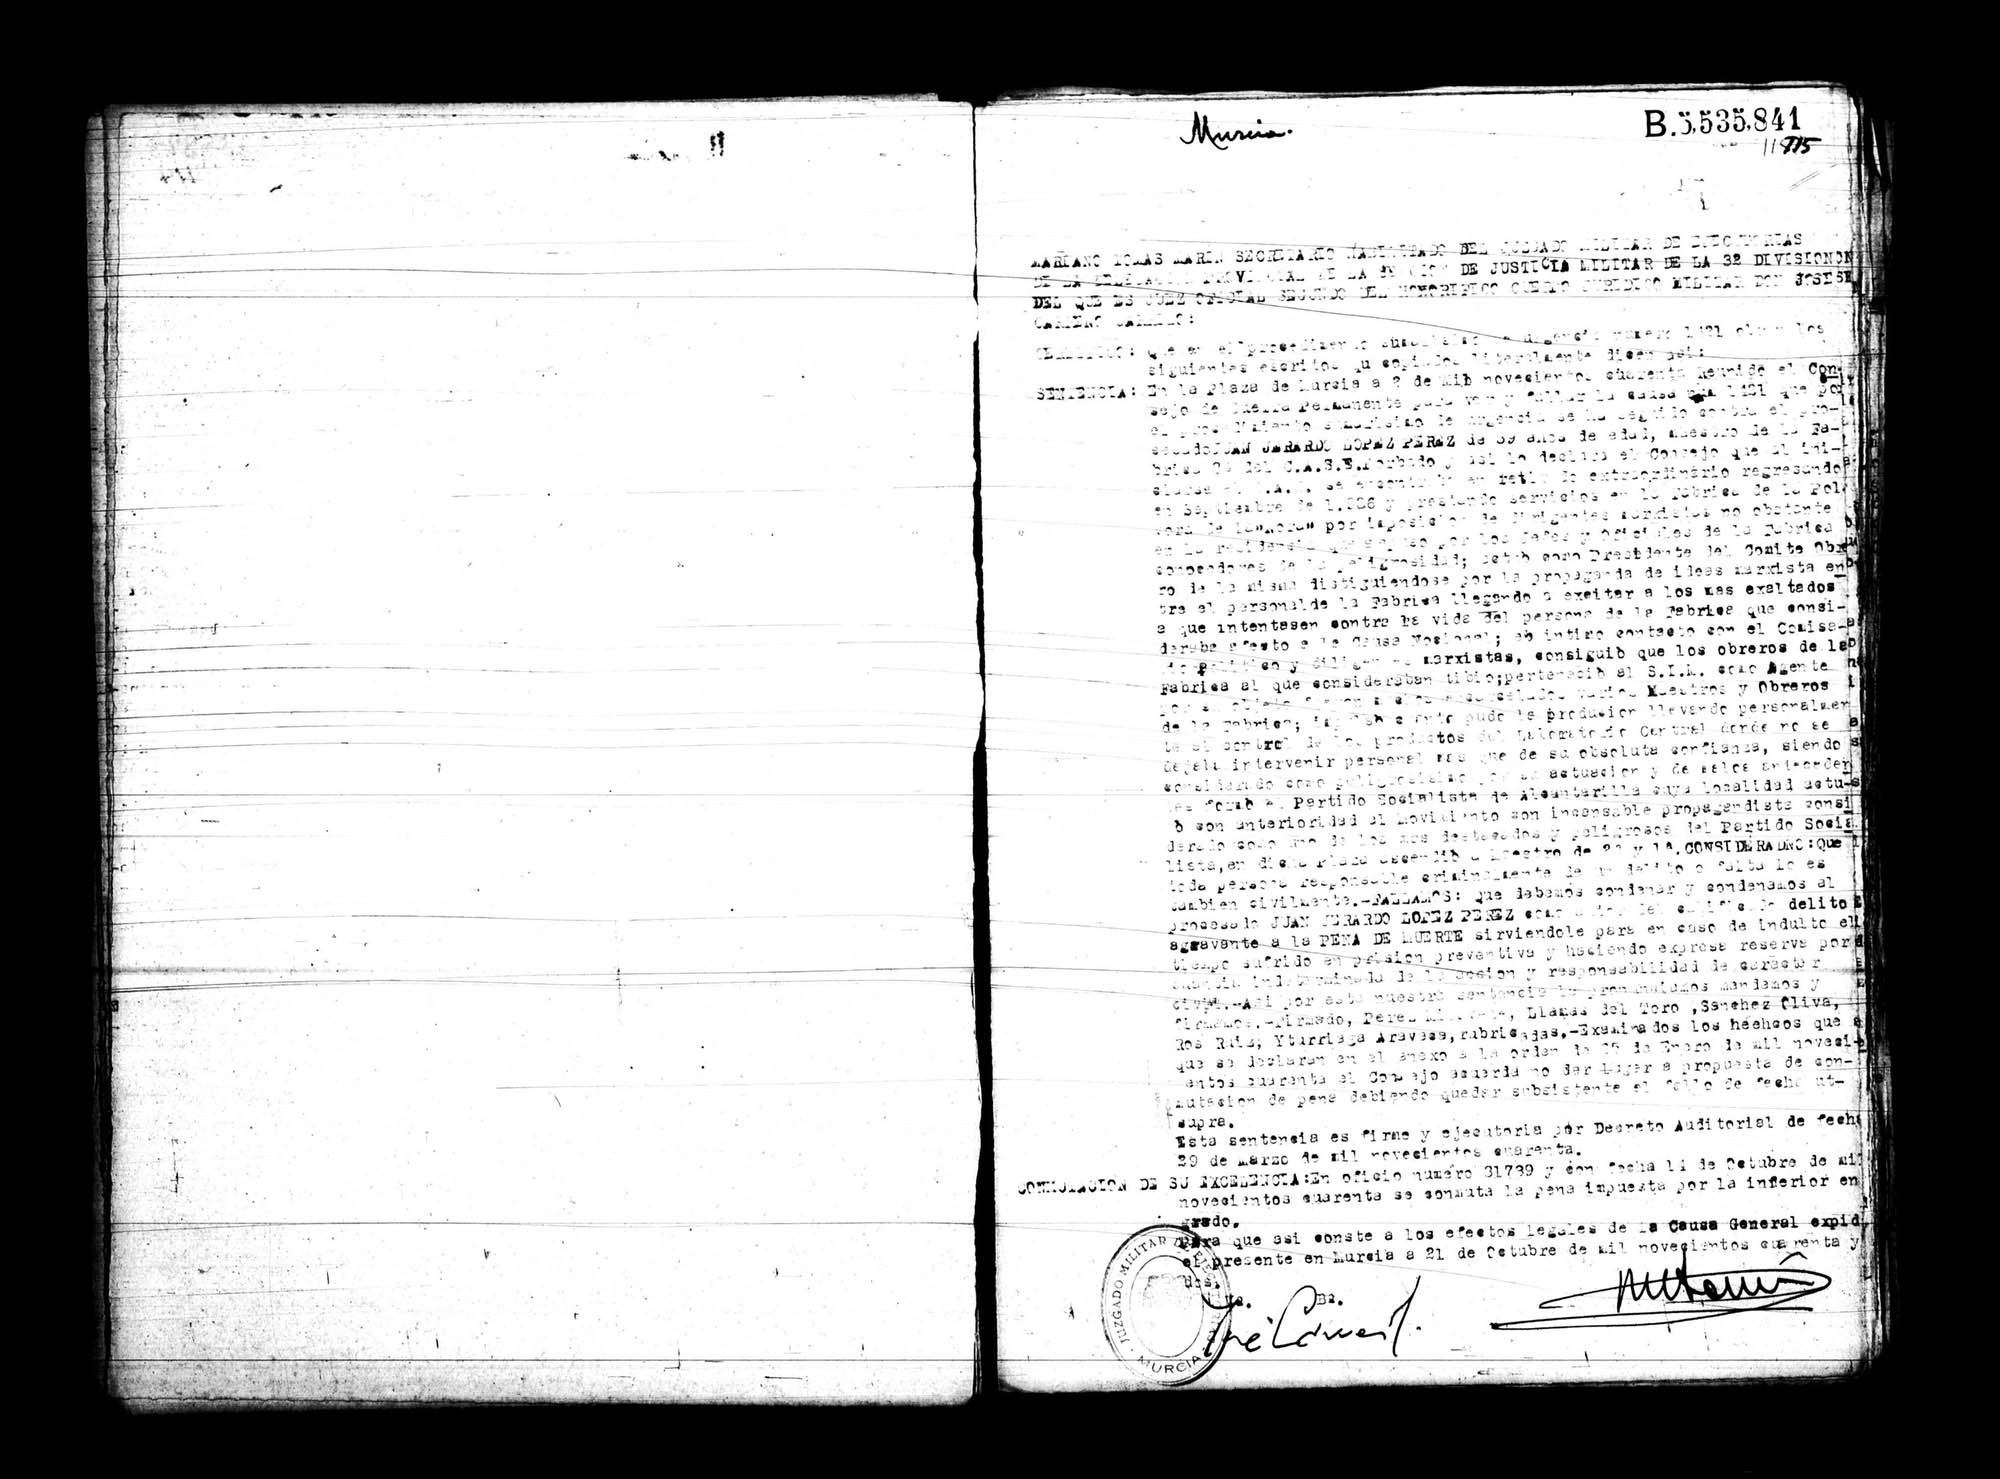 Certificado de la sentencia pronunciada contra Juan Gerardo López Pérez, causa 1421, en 1940 en Murcia.